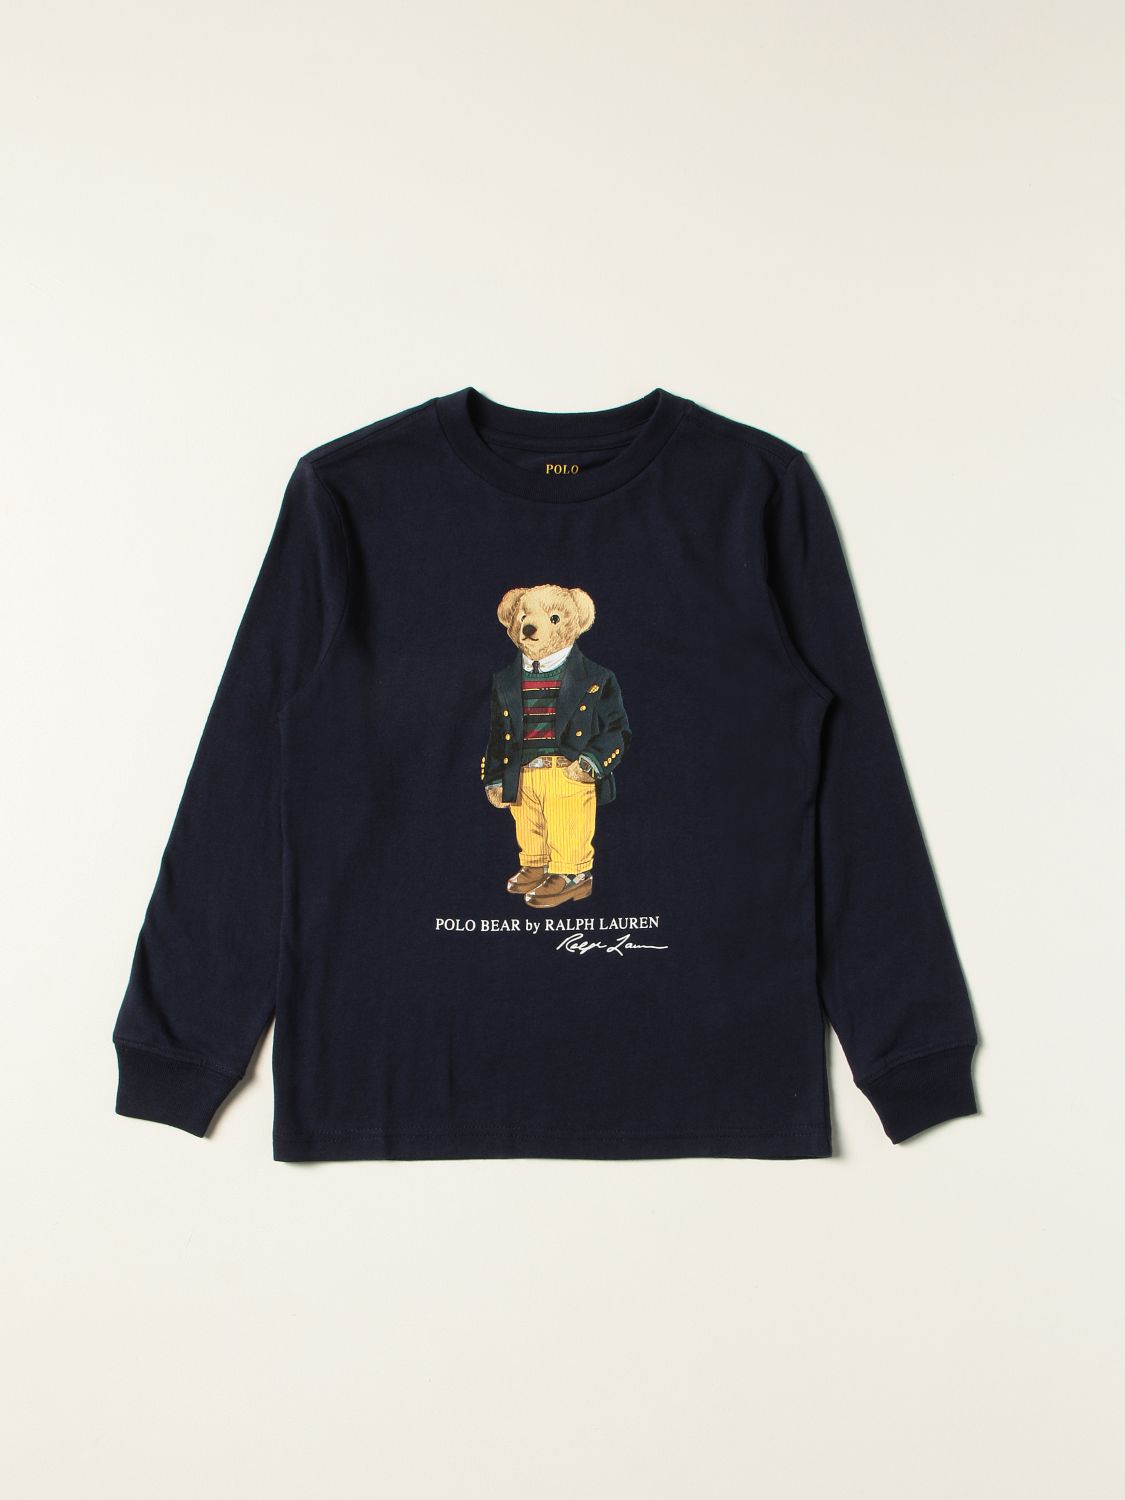 T-Shirt Polo Ralph Lauren: T-shirt kinder Polo Ralph Lauren blau 1